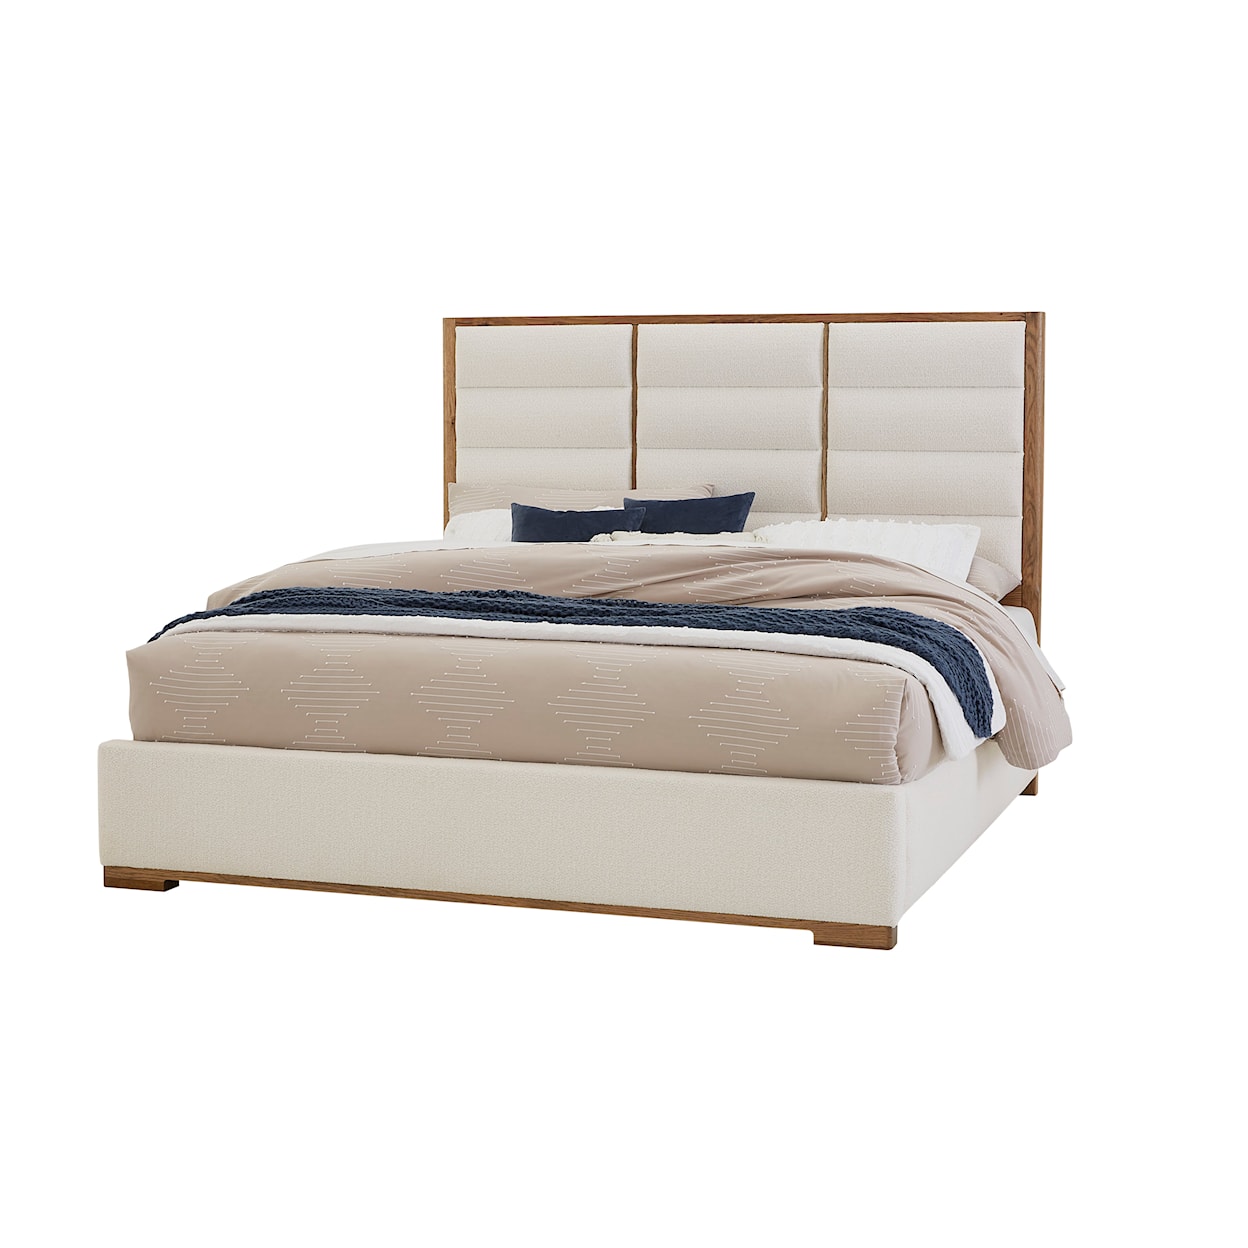 Vaughan-Bassett Charter Oak Upholstered King Bedroom Set